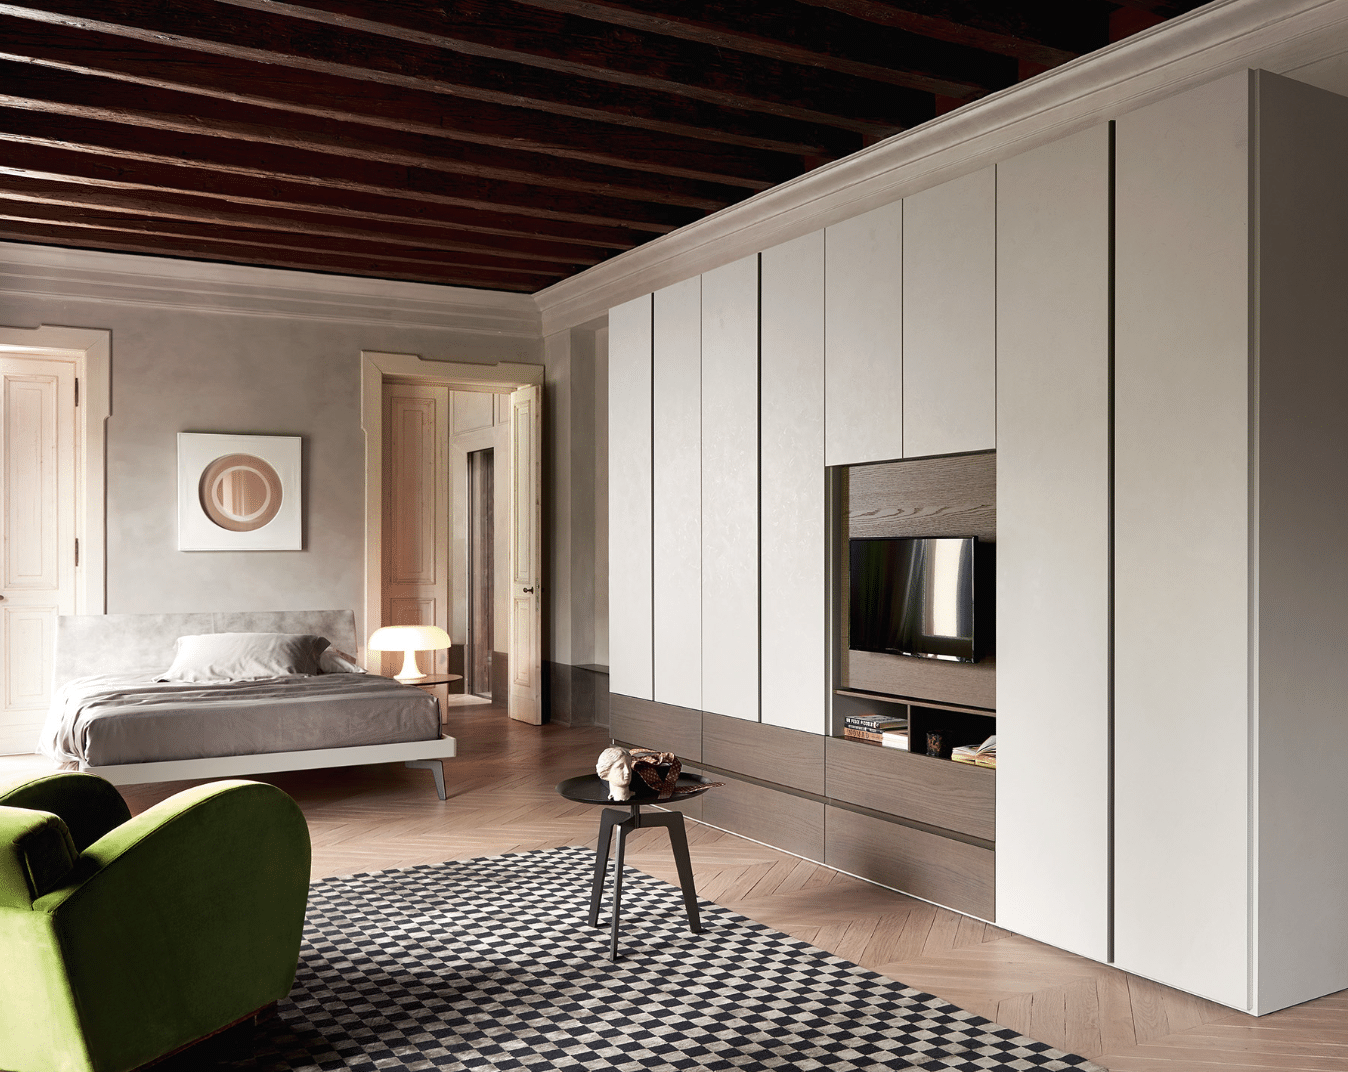 WOHNHAUS Grill & Ronacher zeigt ein Schlafzimmer mit einem eleganten Schrank mit hellen Türen von San Giacomo.